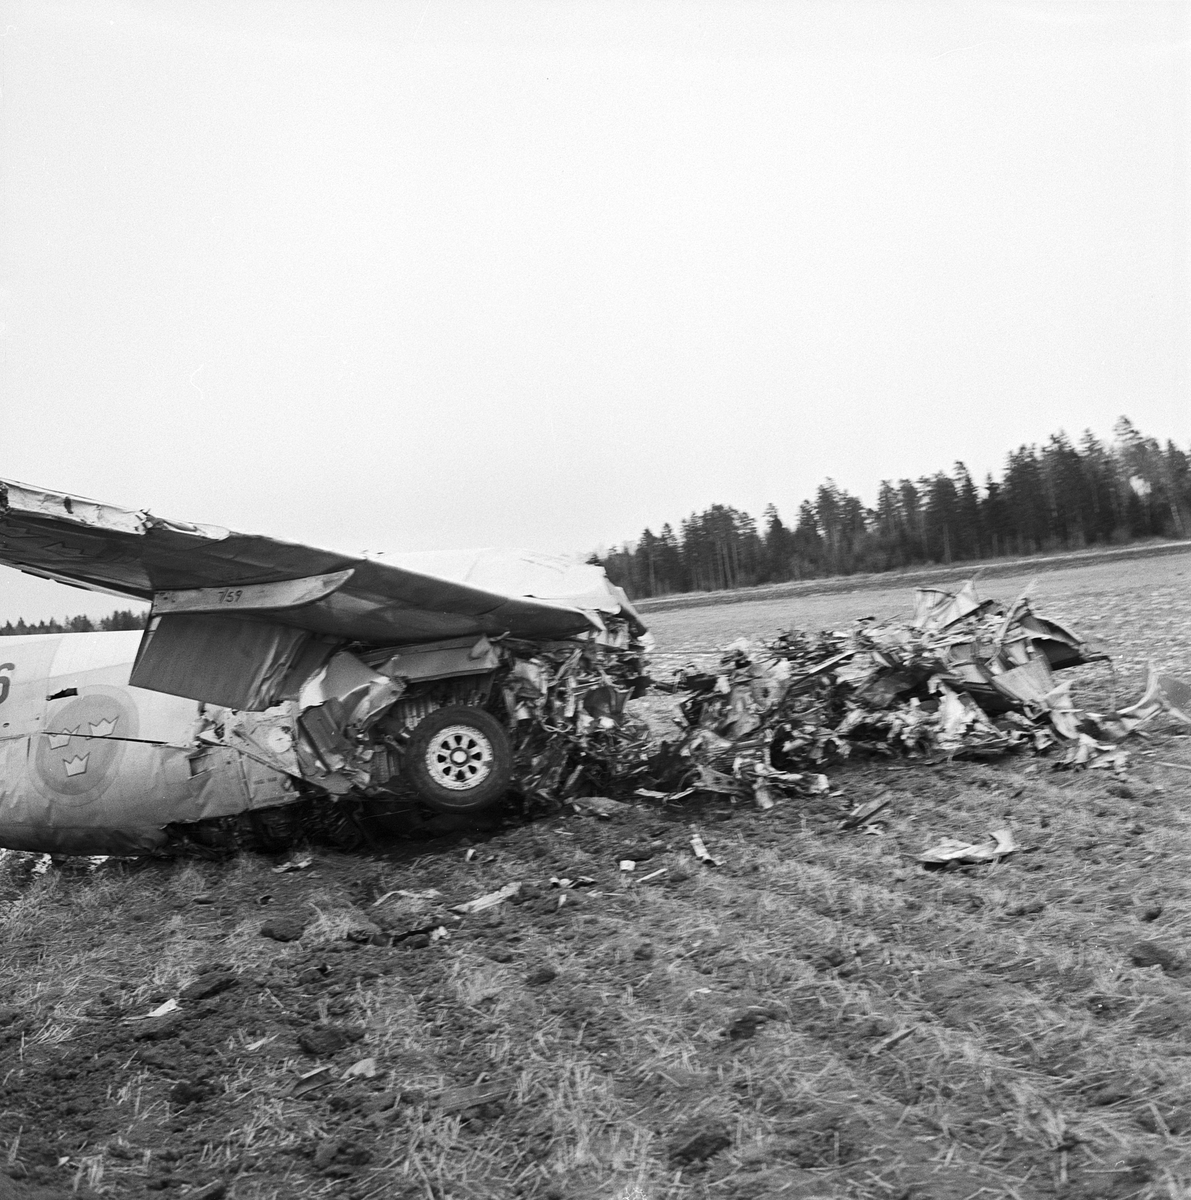 Fältflygare Martin Lang räddade sig i fallskärm när hans plan störtade i Långtibbleby, Uppland 1959